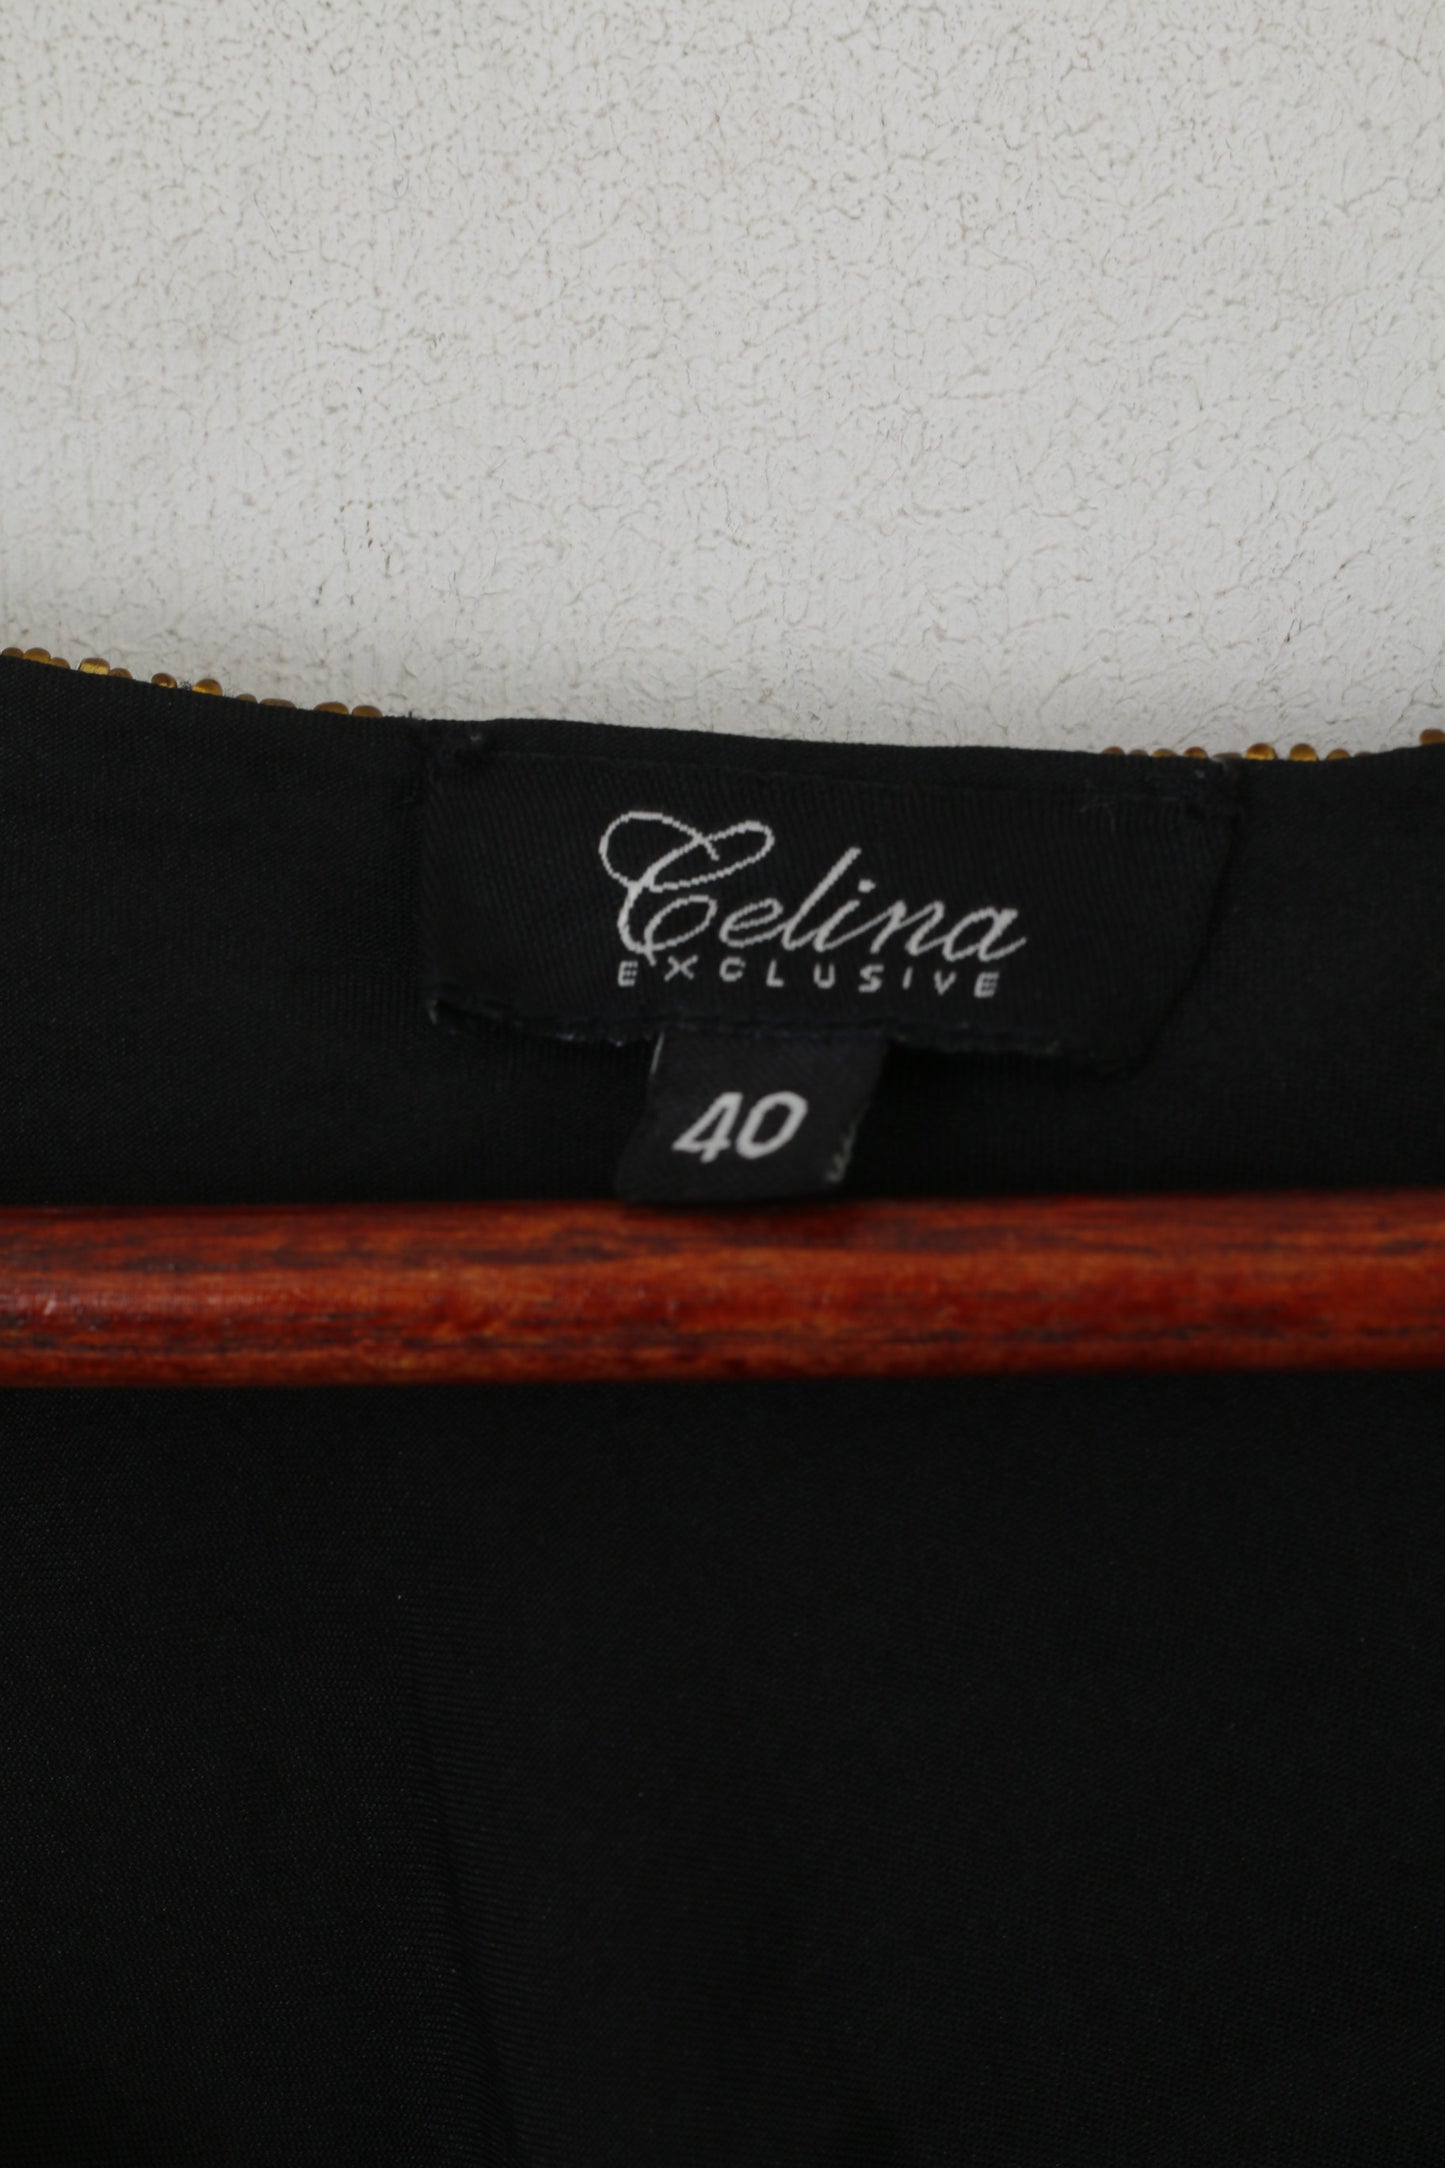 Celina exclusif femmes 40 M chemise noir perles florales brillant élégant débardeur